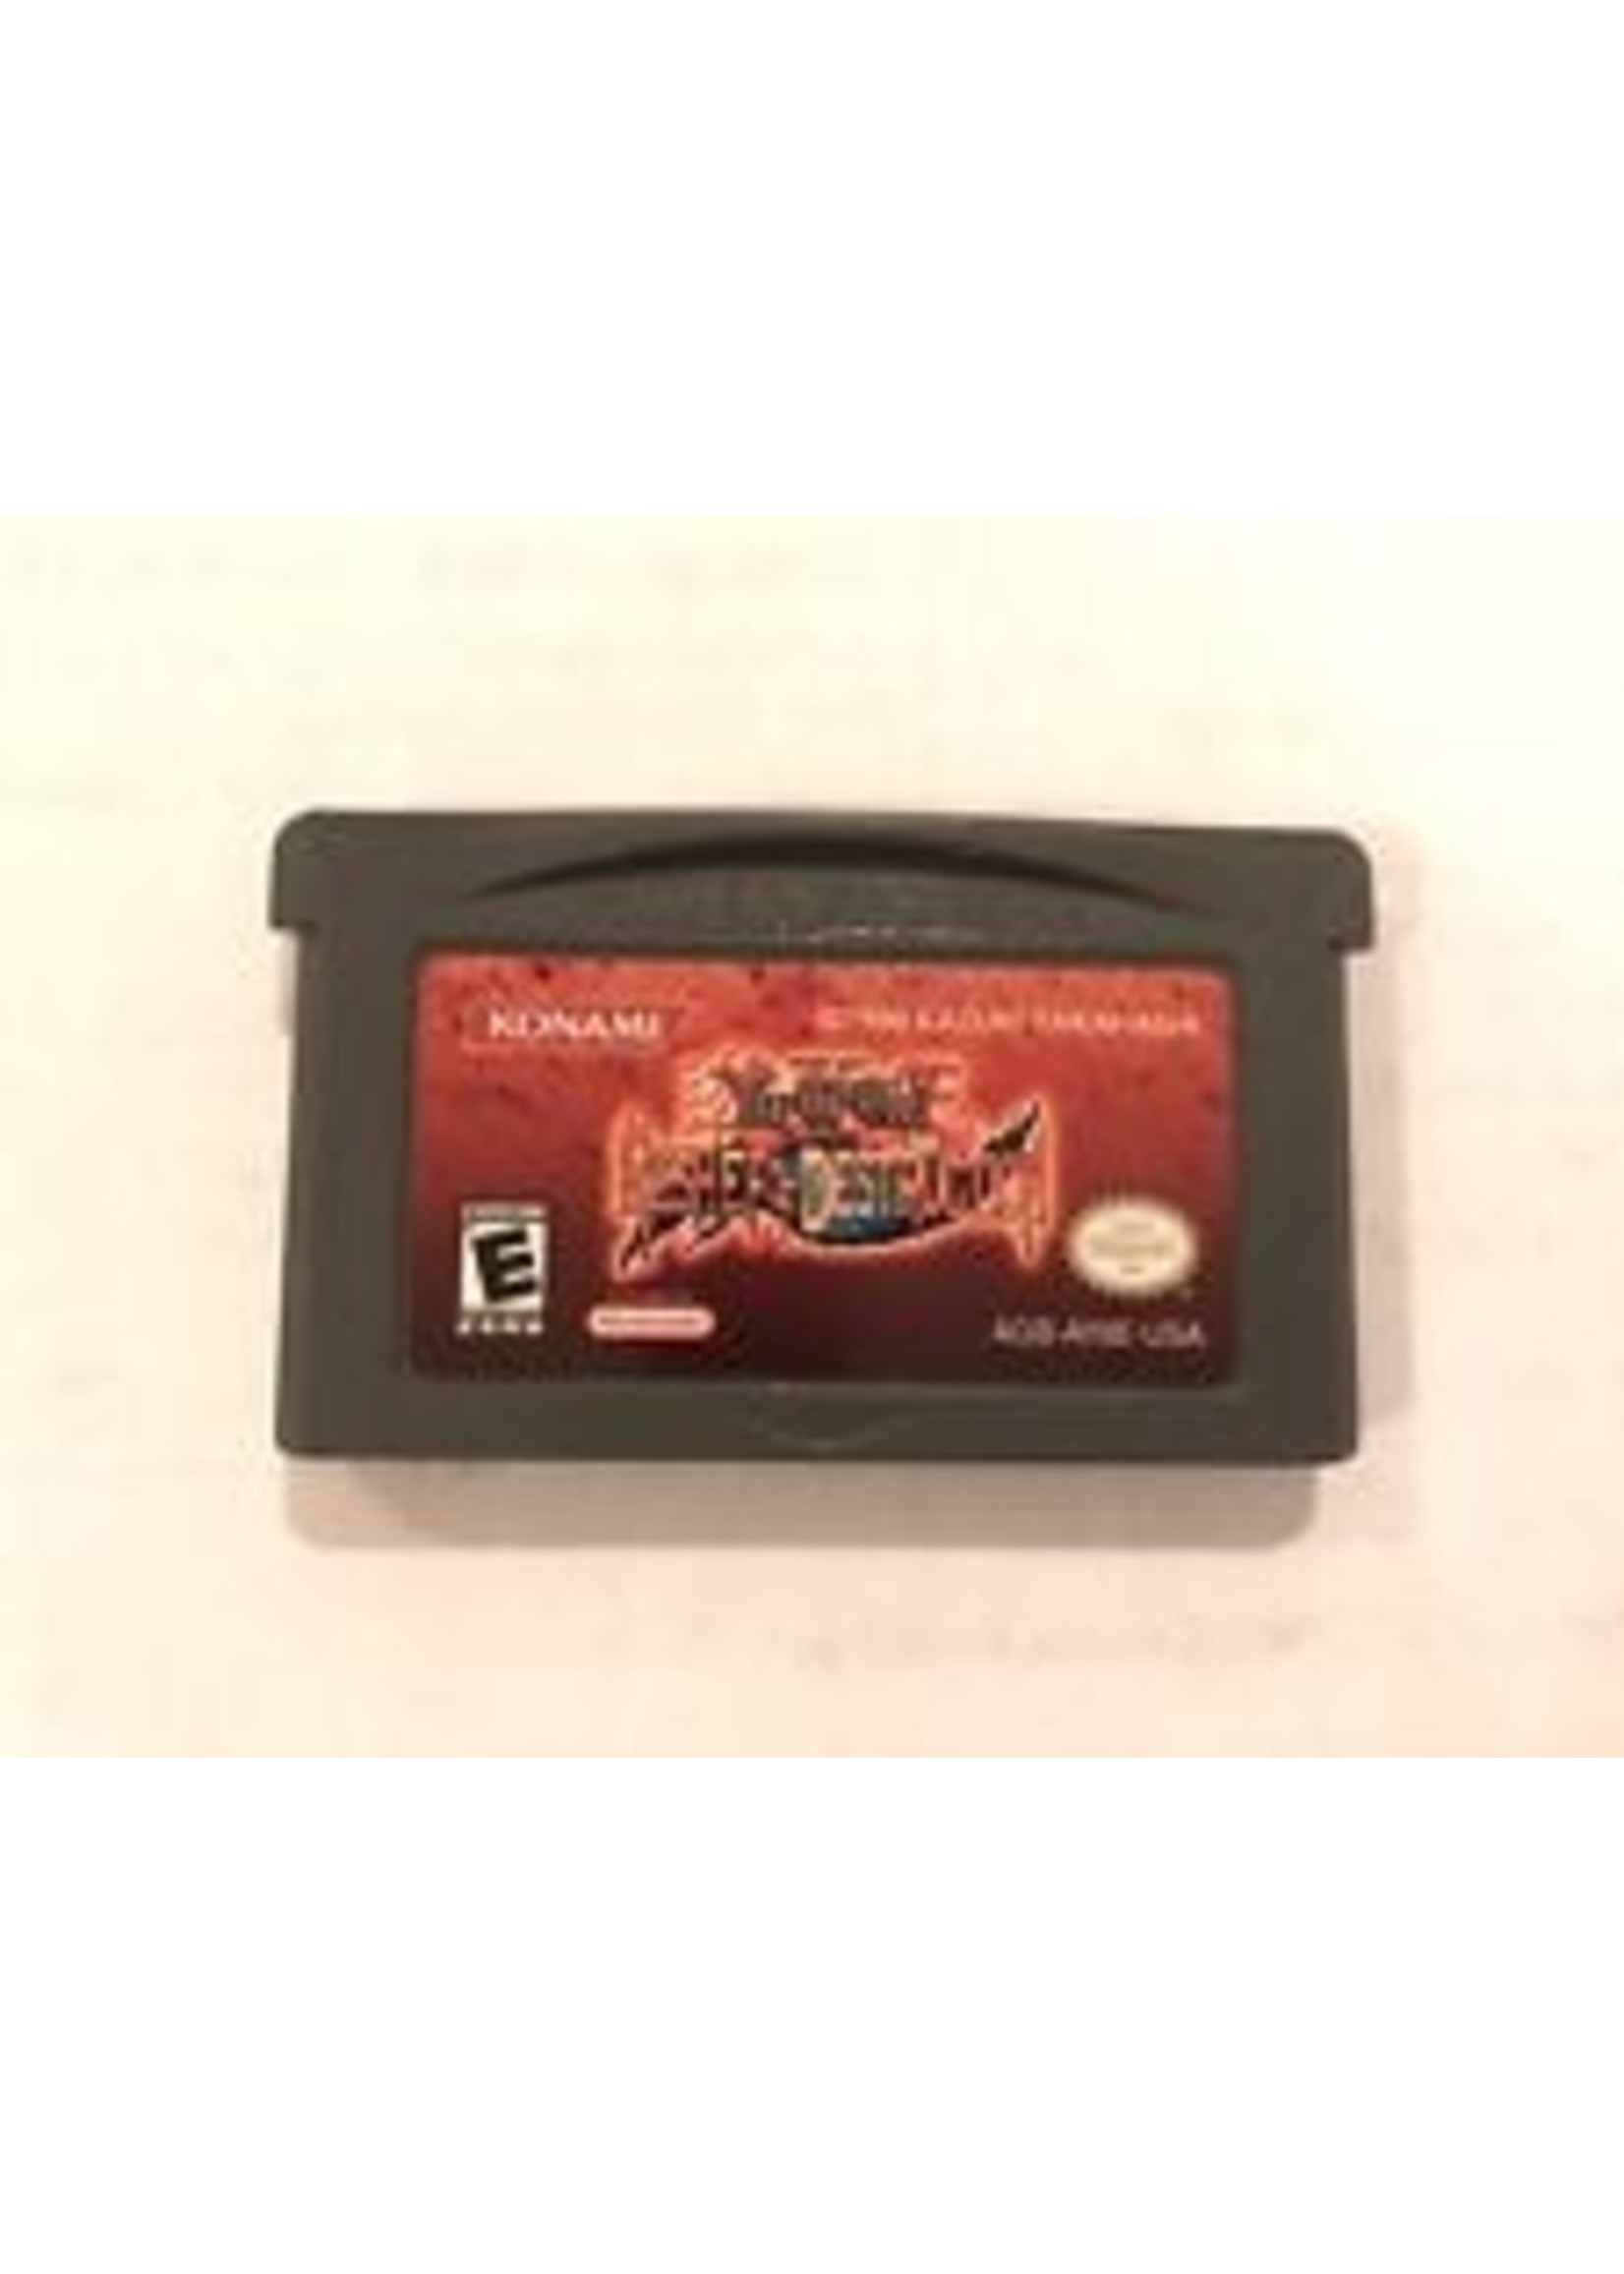 Nintendo Gameboy Advance Yu-Gi-Oh Reshef of Destruction